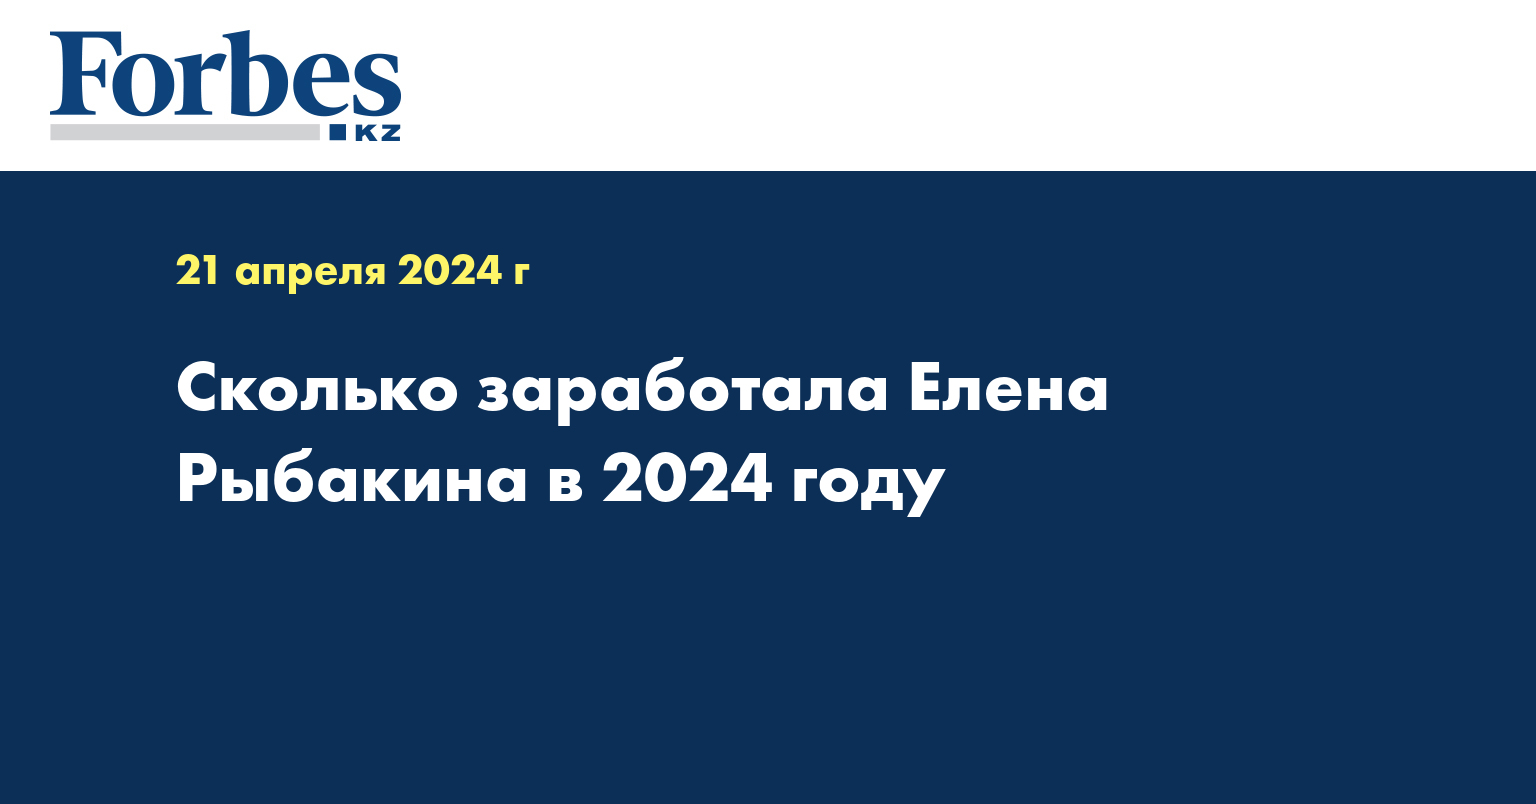 Сколько заработала Елена Рыбакина в 2024 году